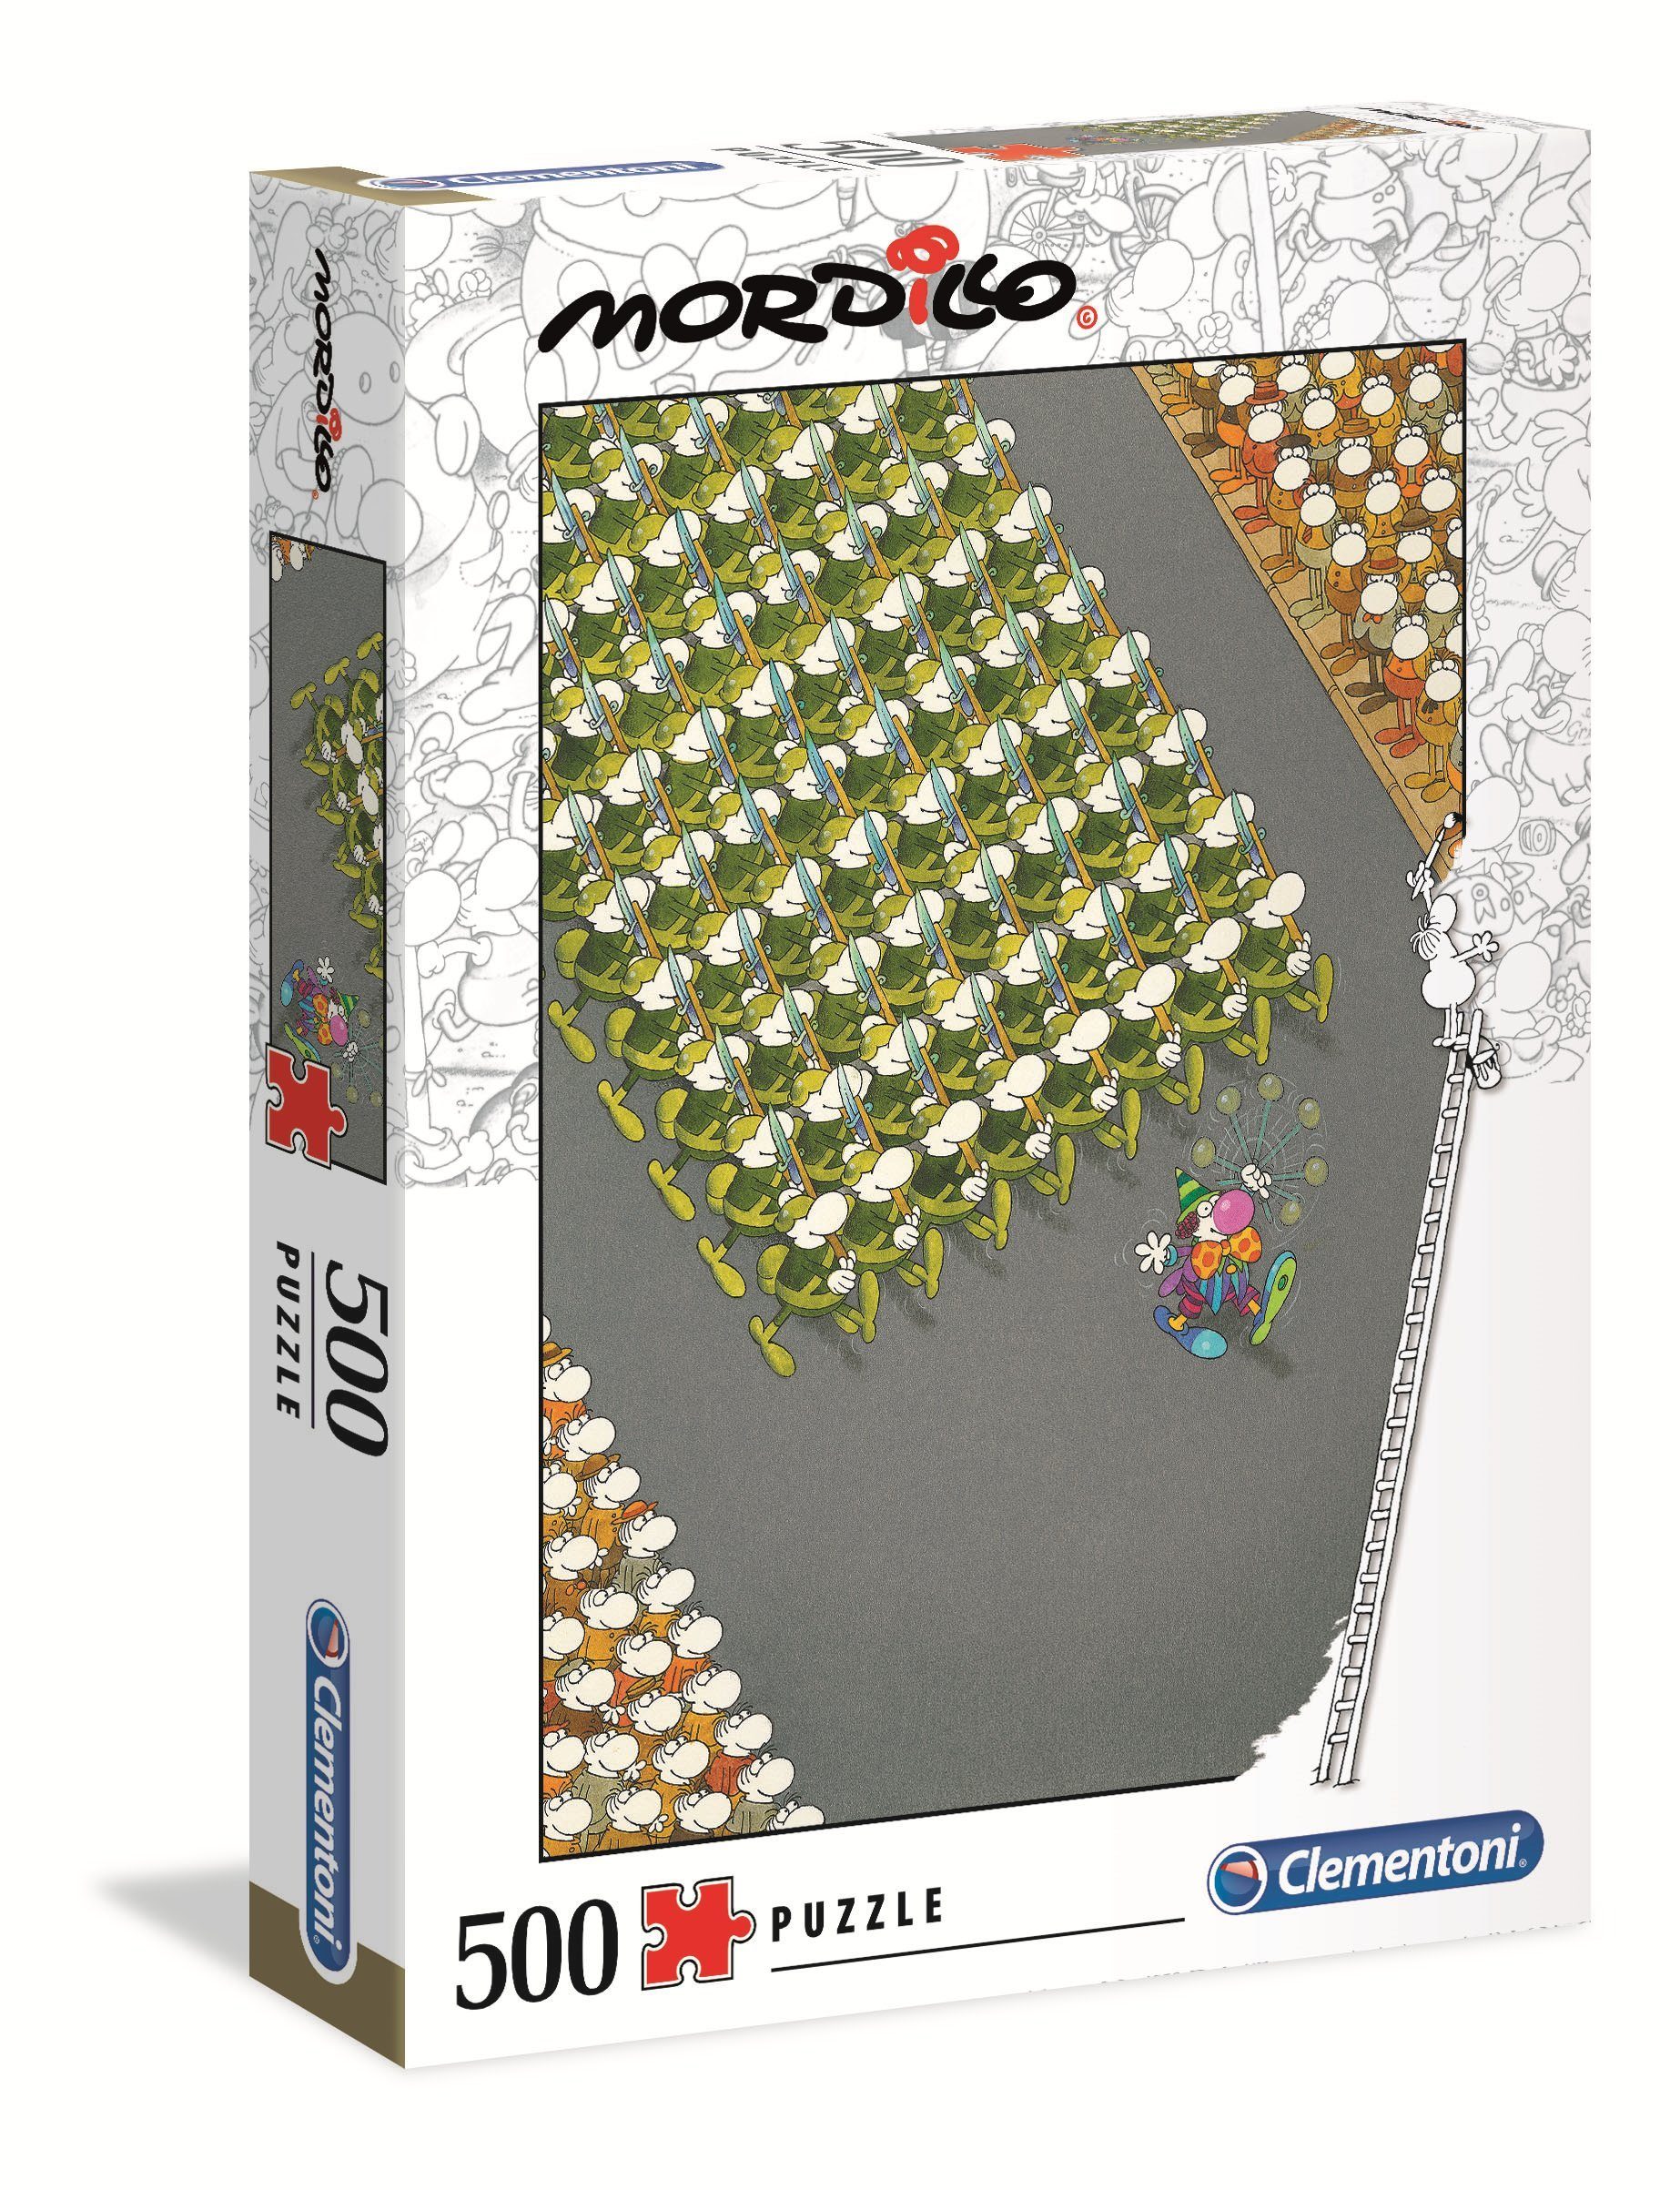 Clementoni® Puzzle 35078 Mordillo Der Marsch 500 Teile Puzzle, 500 Puzzleteile